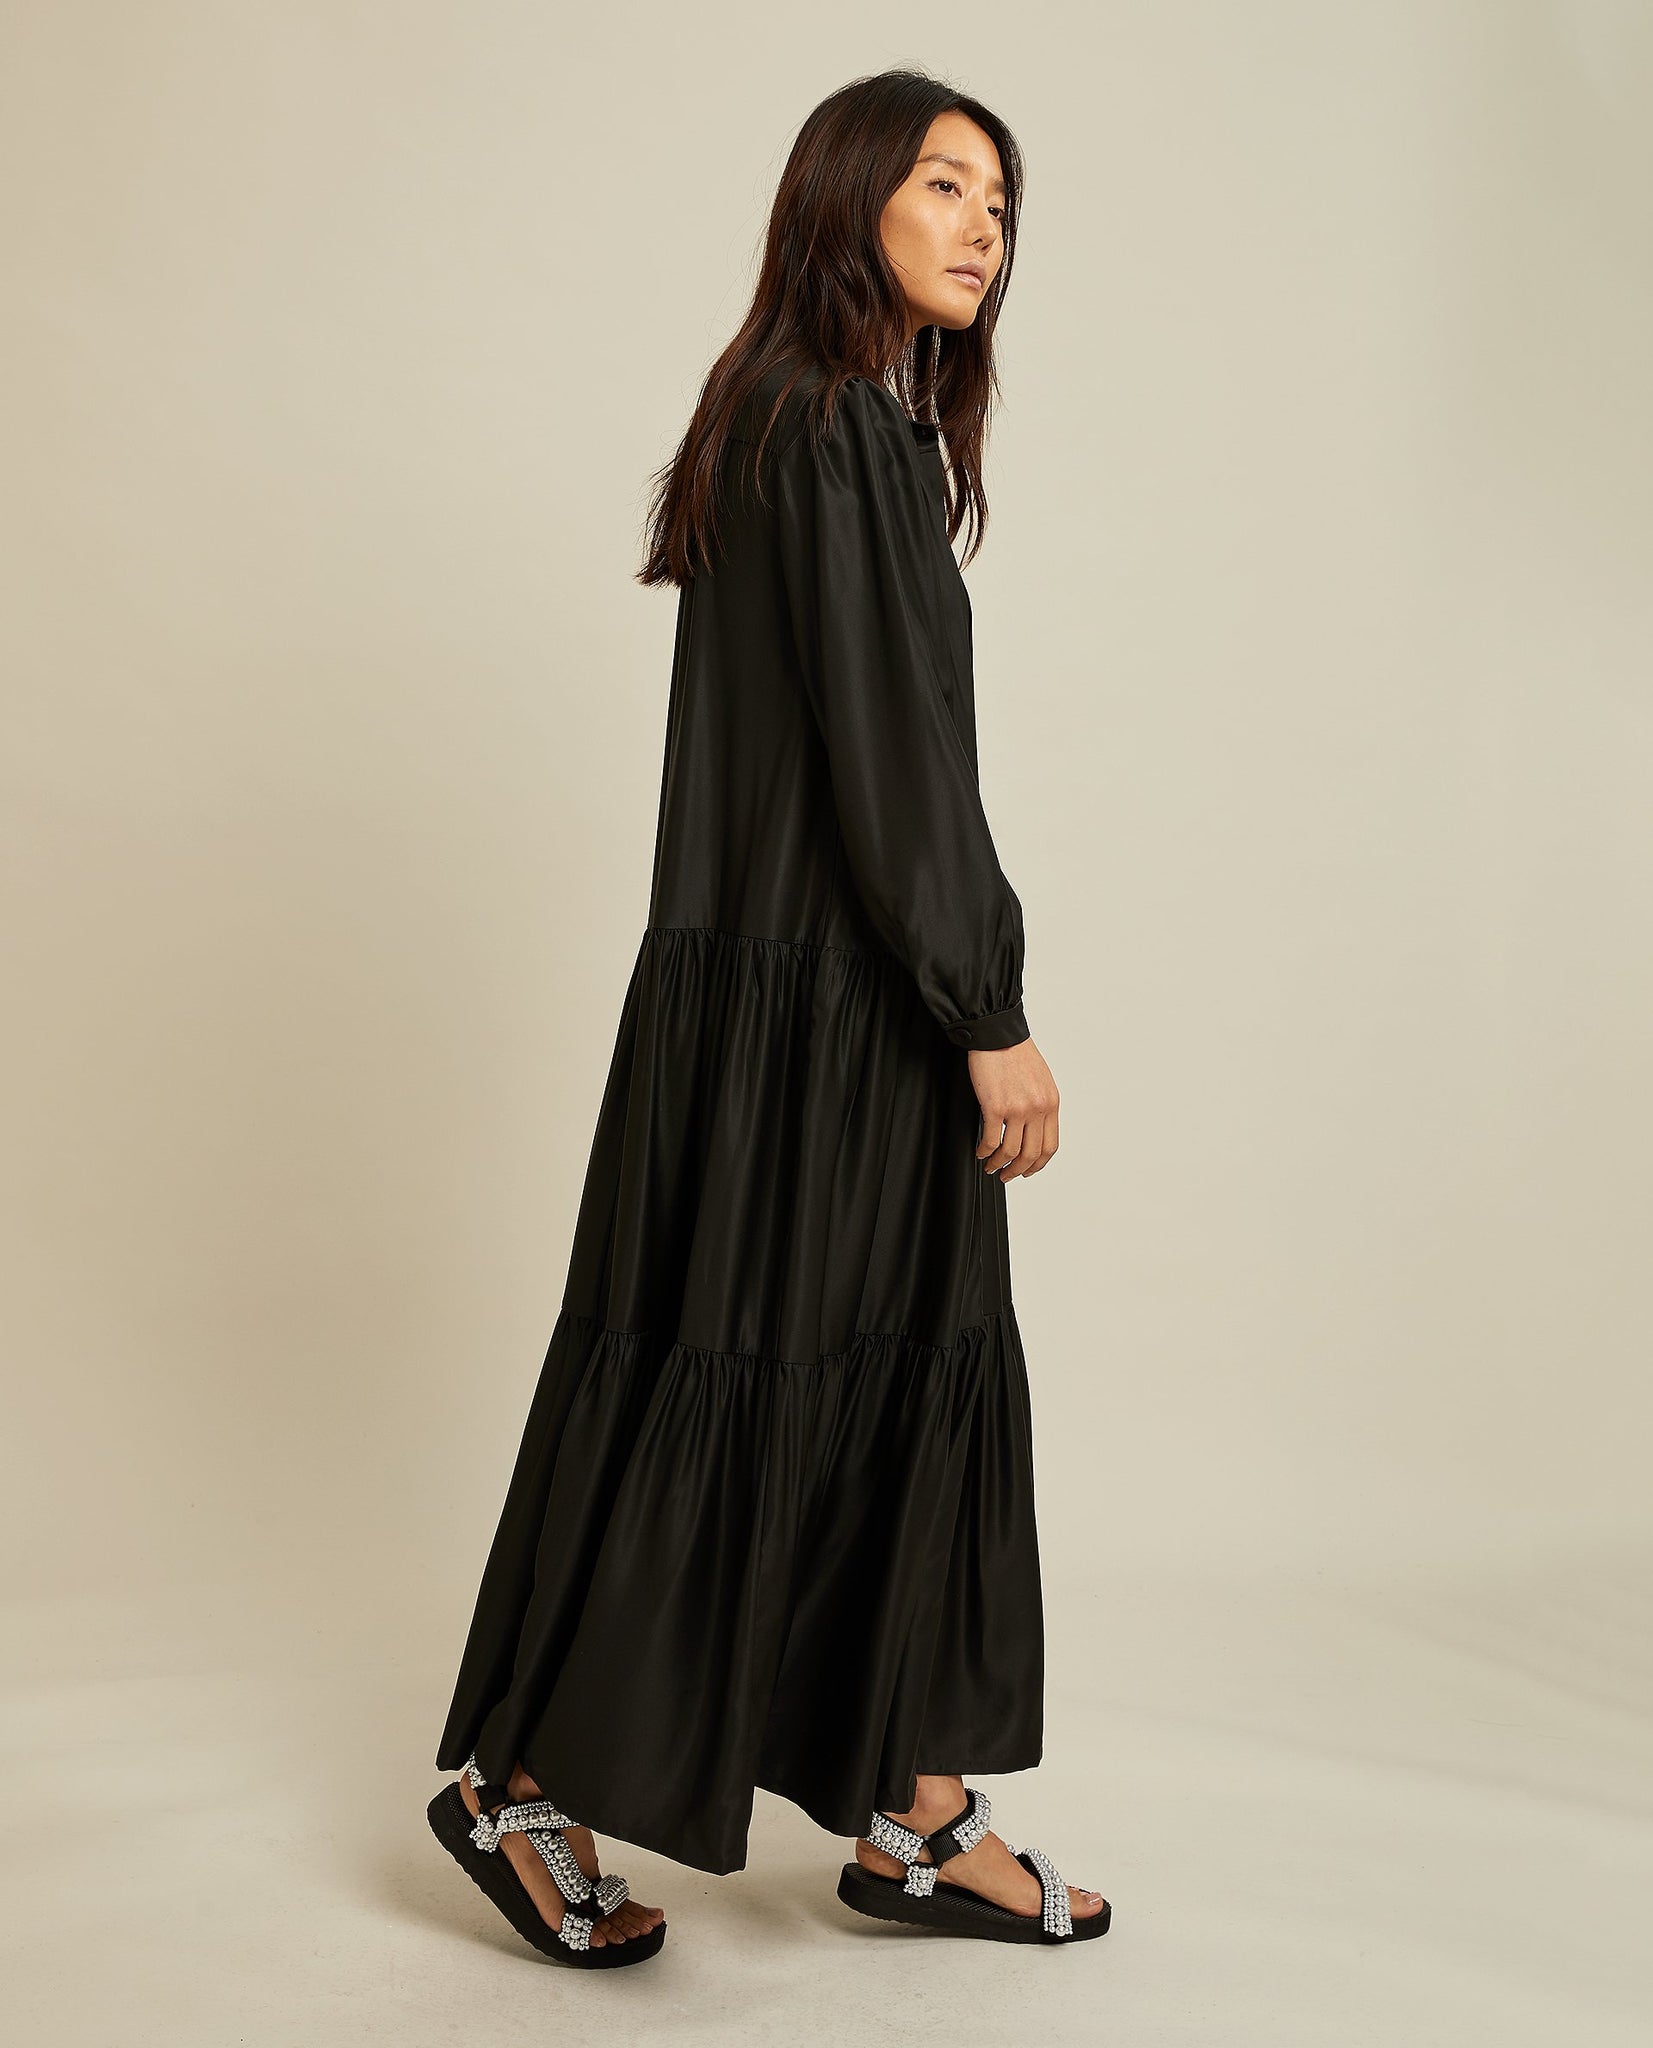 PINA DRESS BLACK BY LES COYOTES DE PARIS - BEYOND STUDIOS